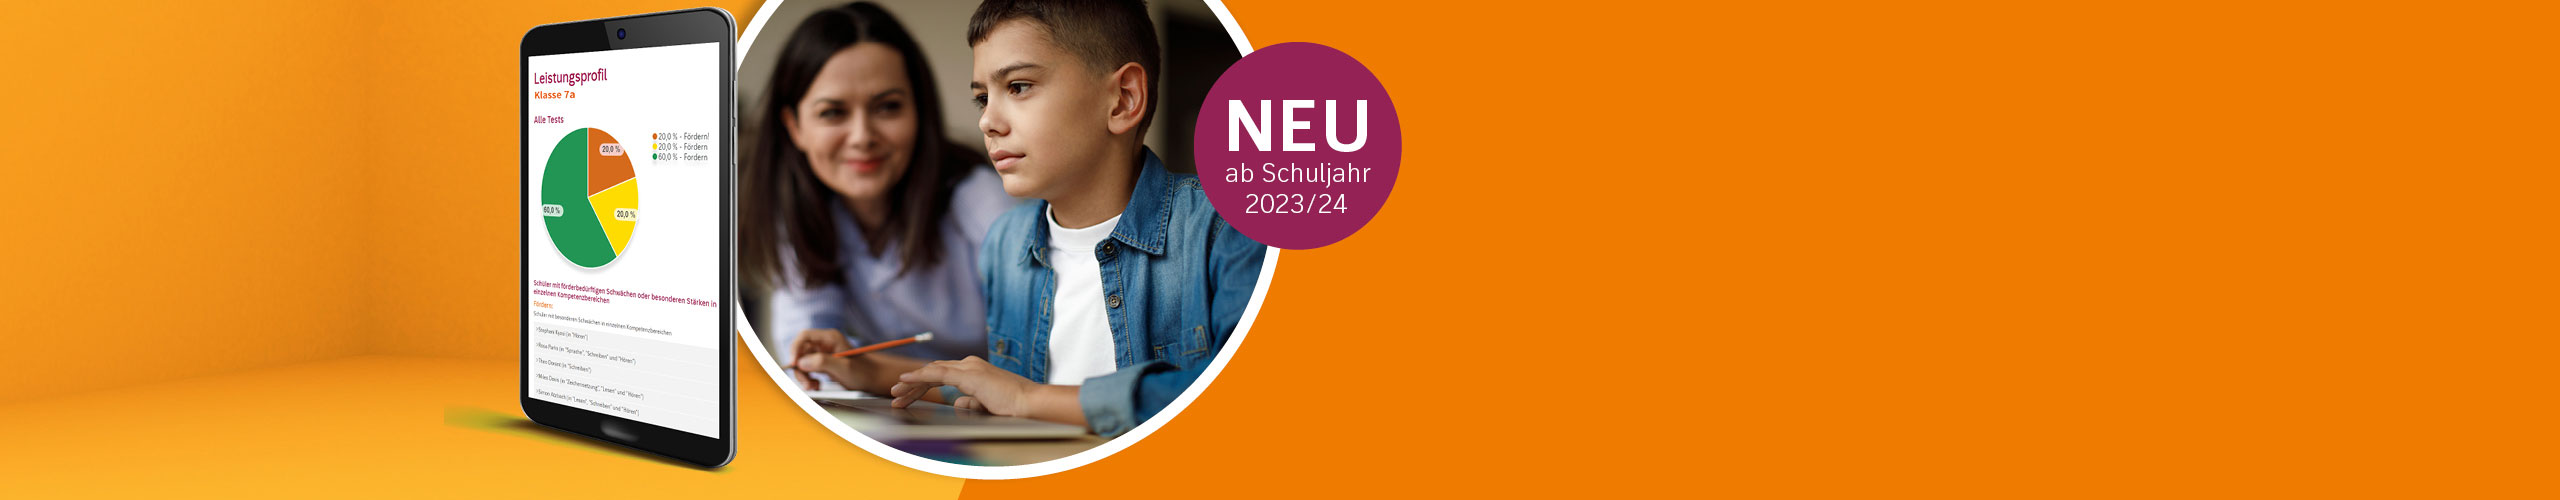 Tablet mit Analyse, Schüler konzentriert am Laptop, Störer: "NEU ab Schuljahr 2023/24"